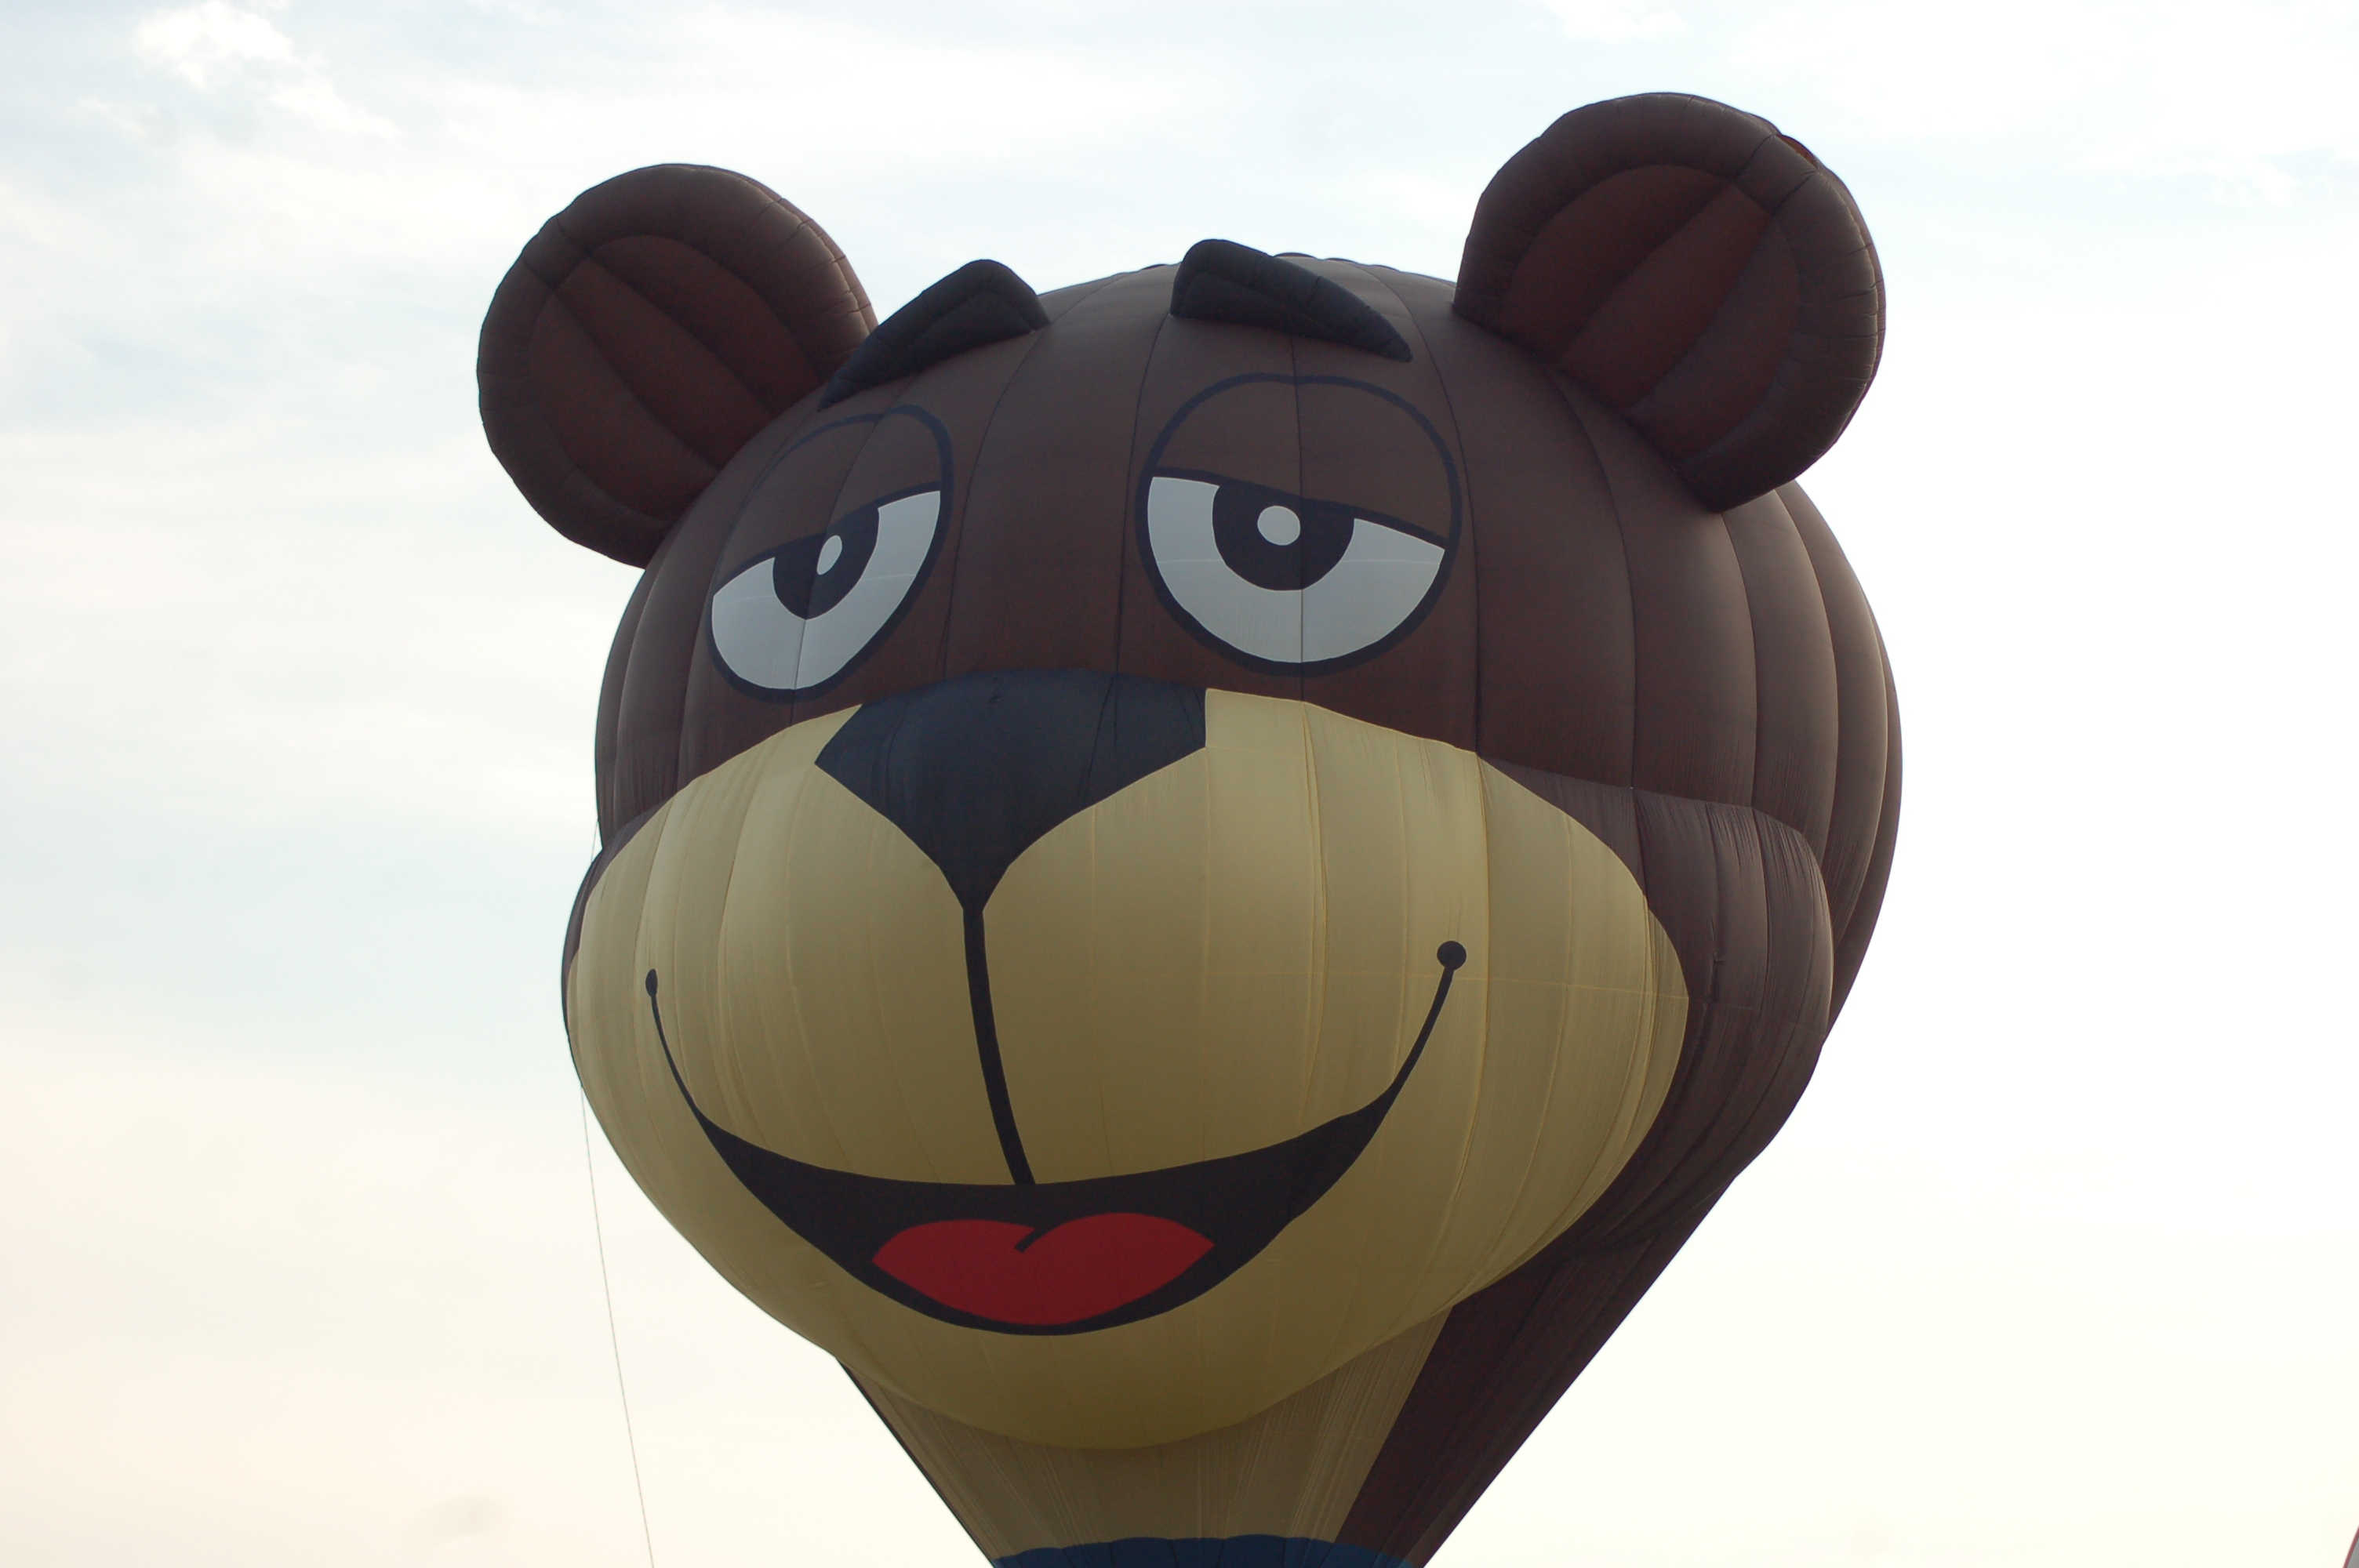 Sugar Bear Balloon Battle Creek